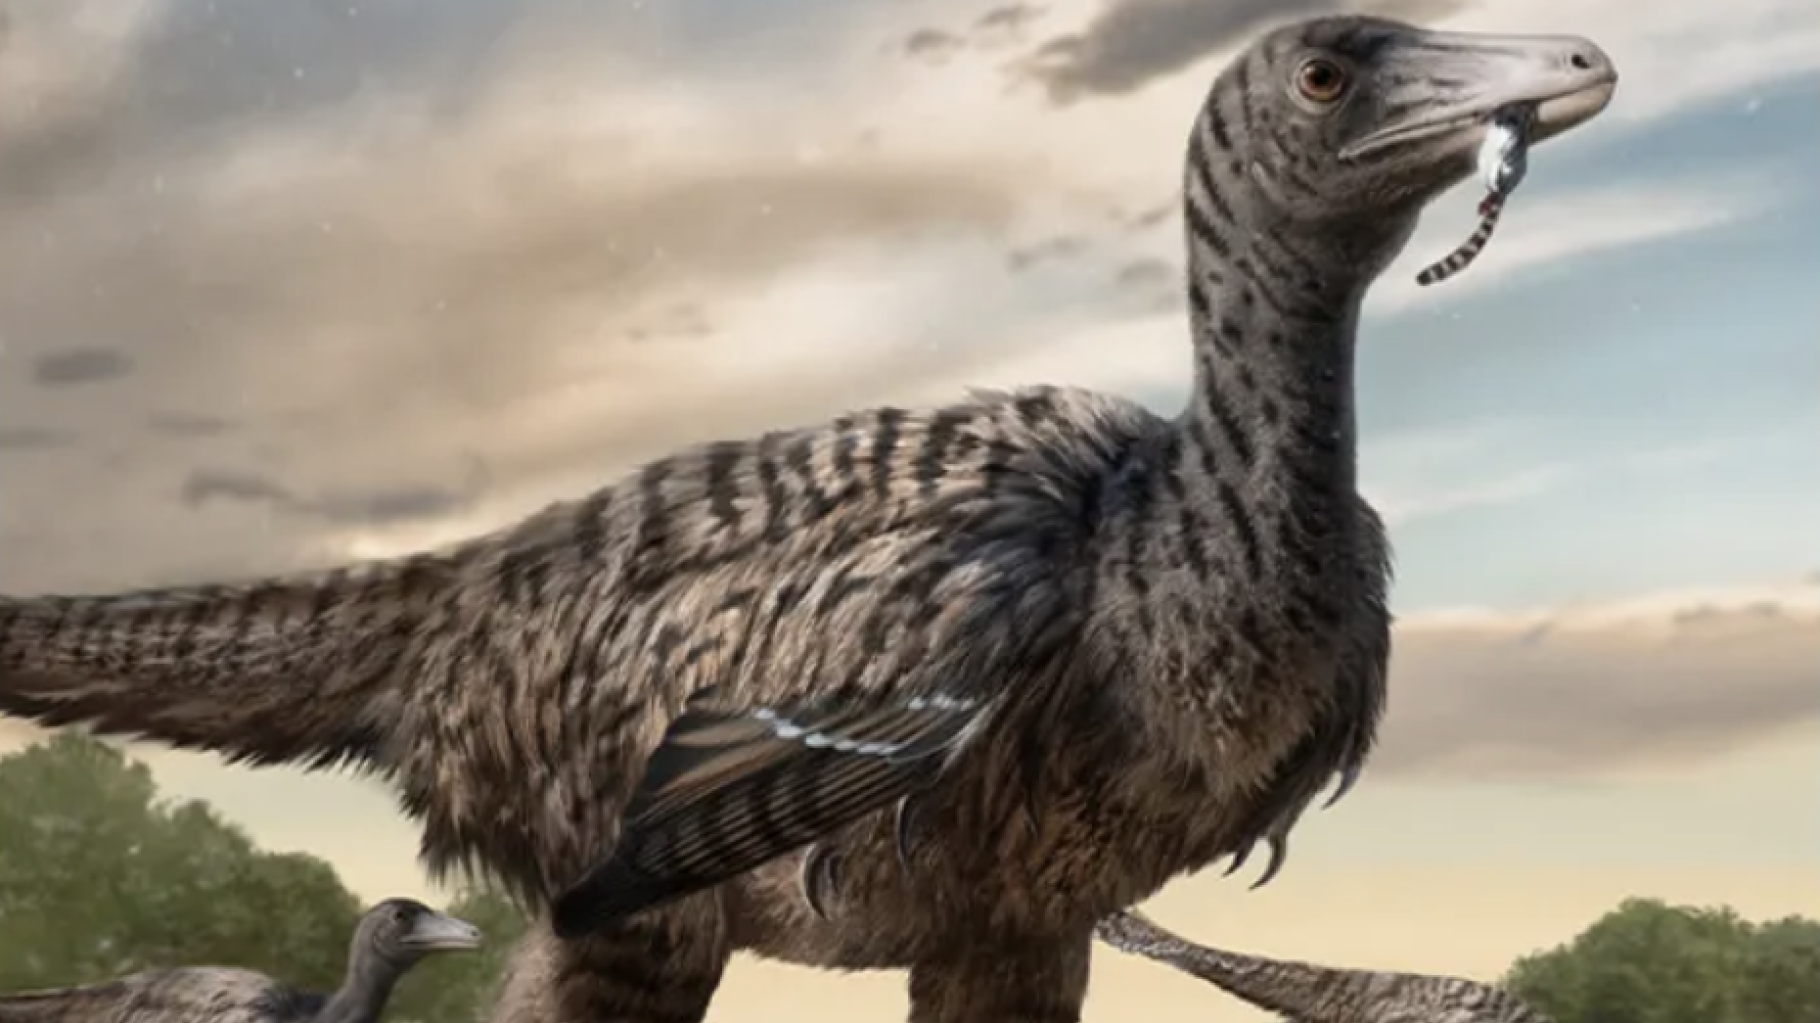 Sporen van een Velociraptor van XXL-formaat, de grootste ooit, zijn ontdekt door onderzoekers in China